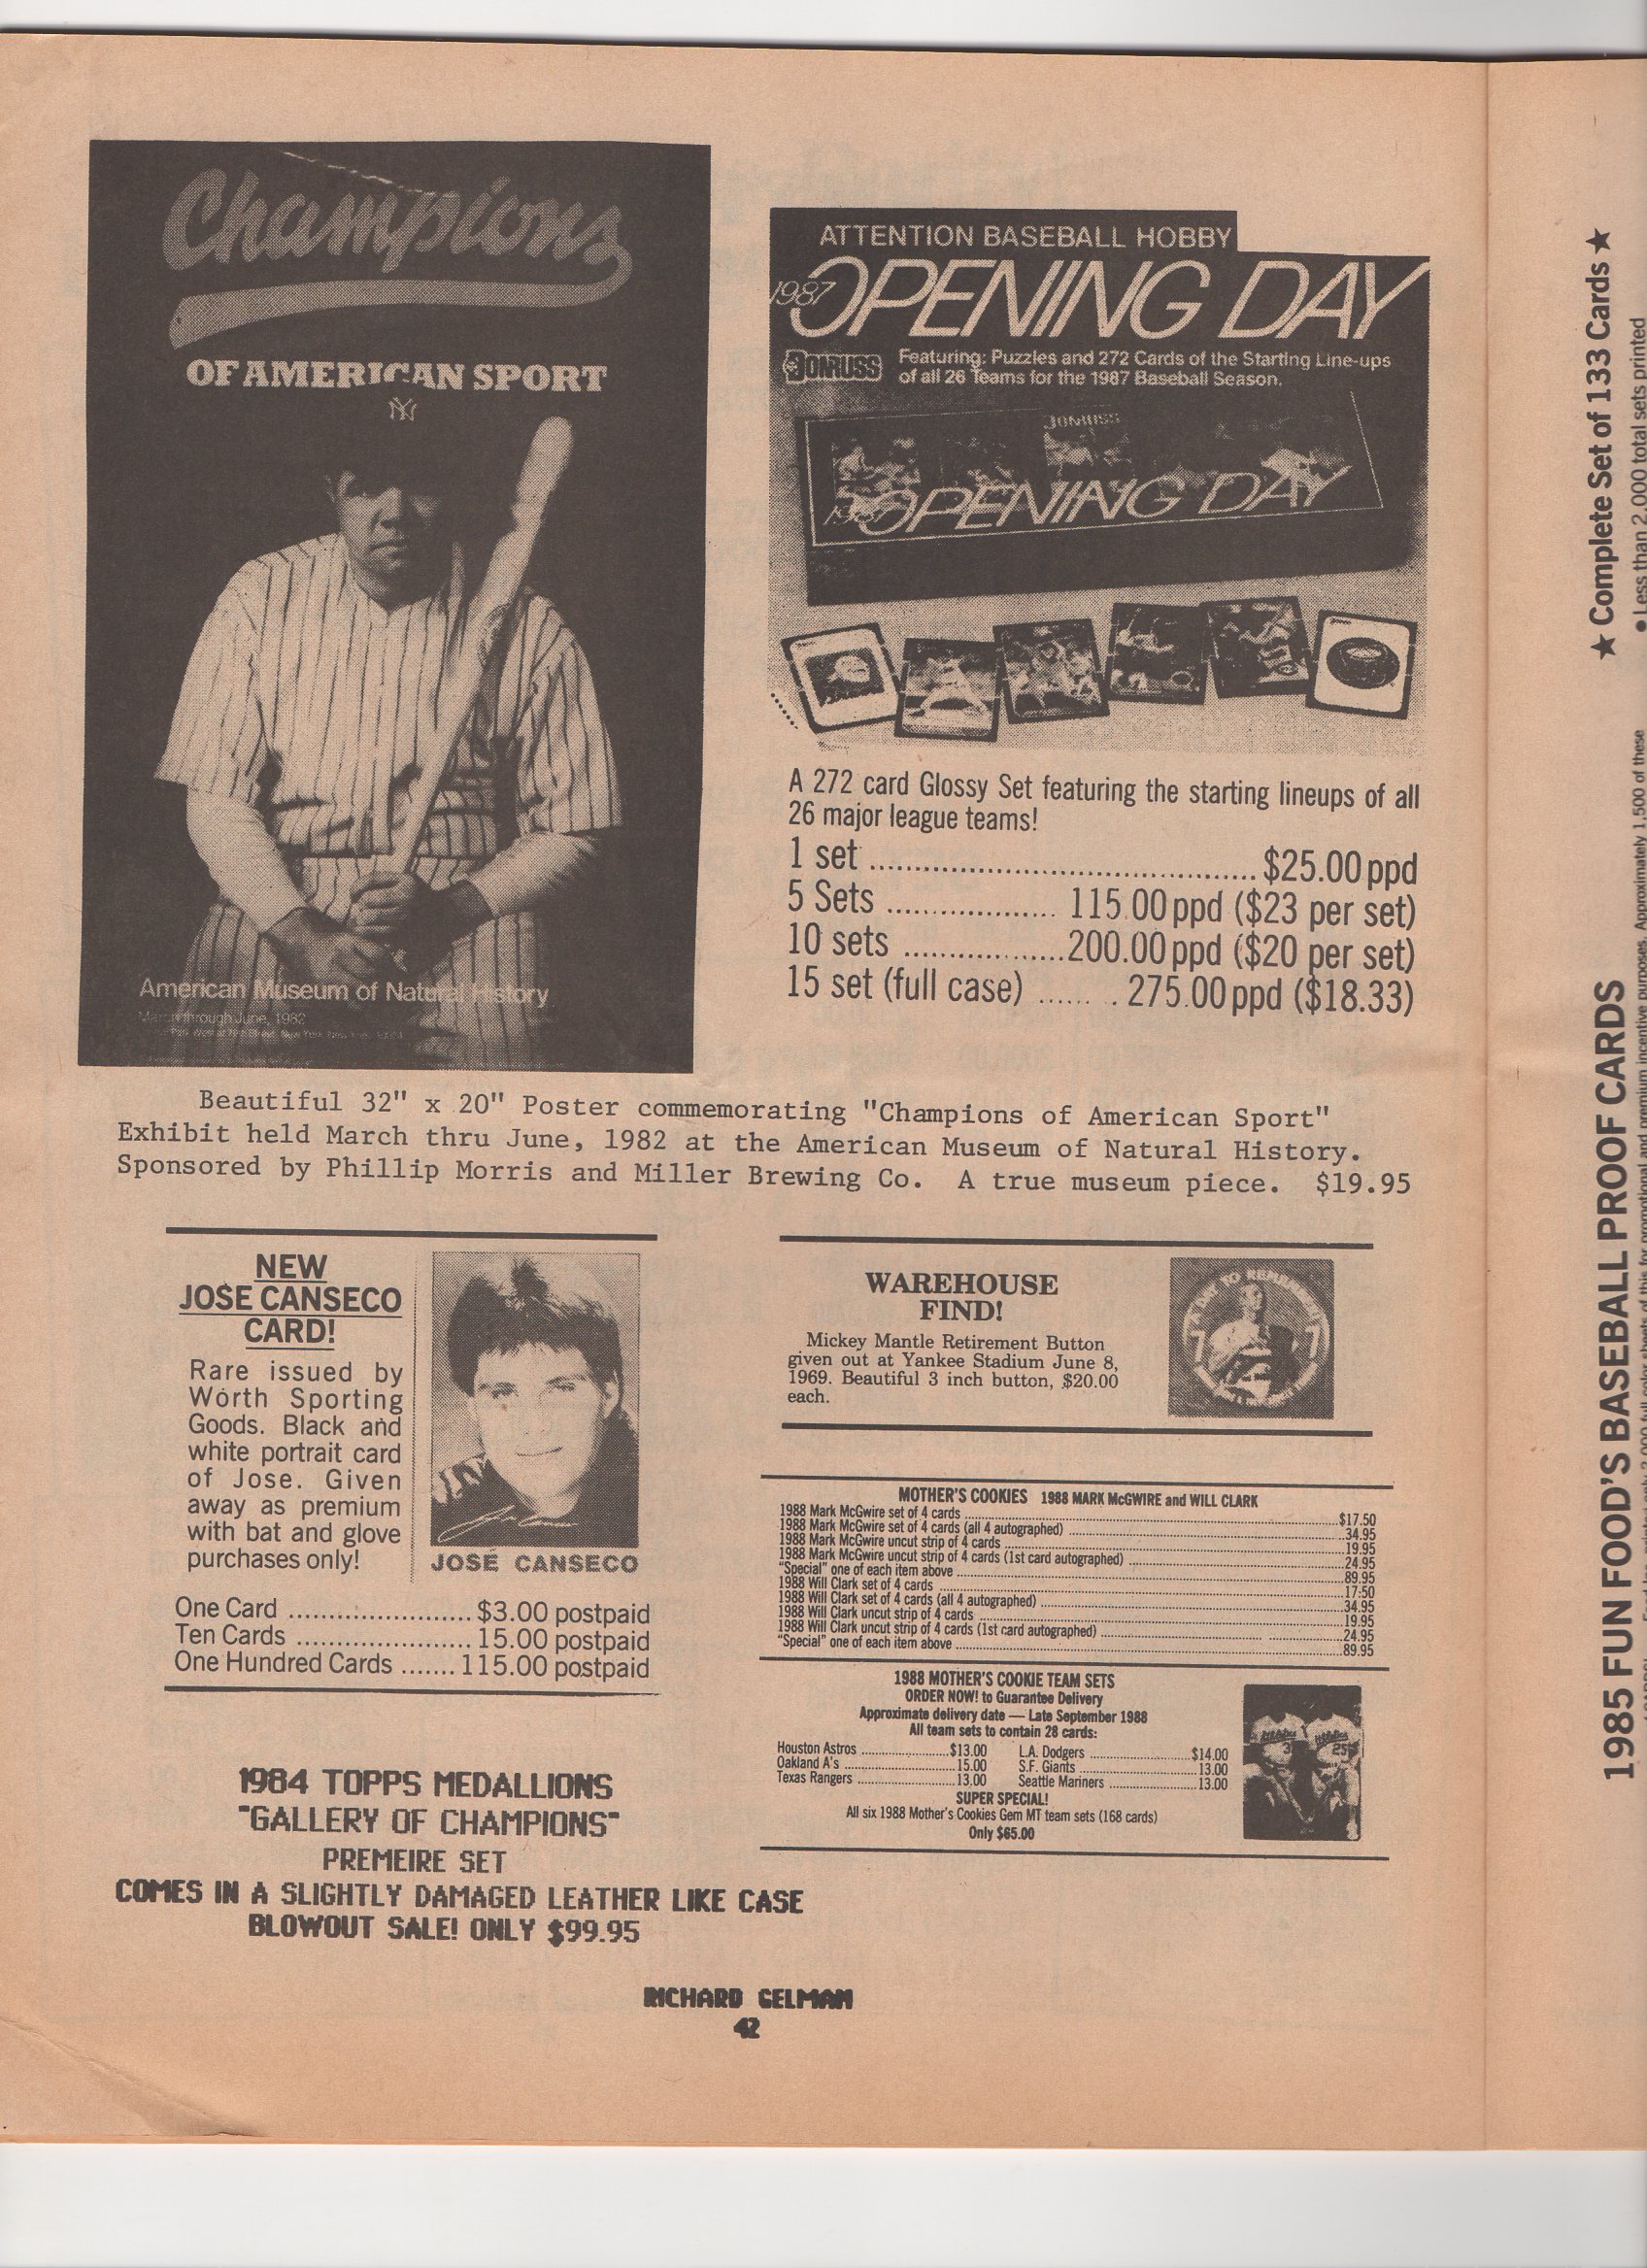 1989 richard gelmans card collectors company